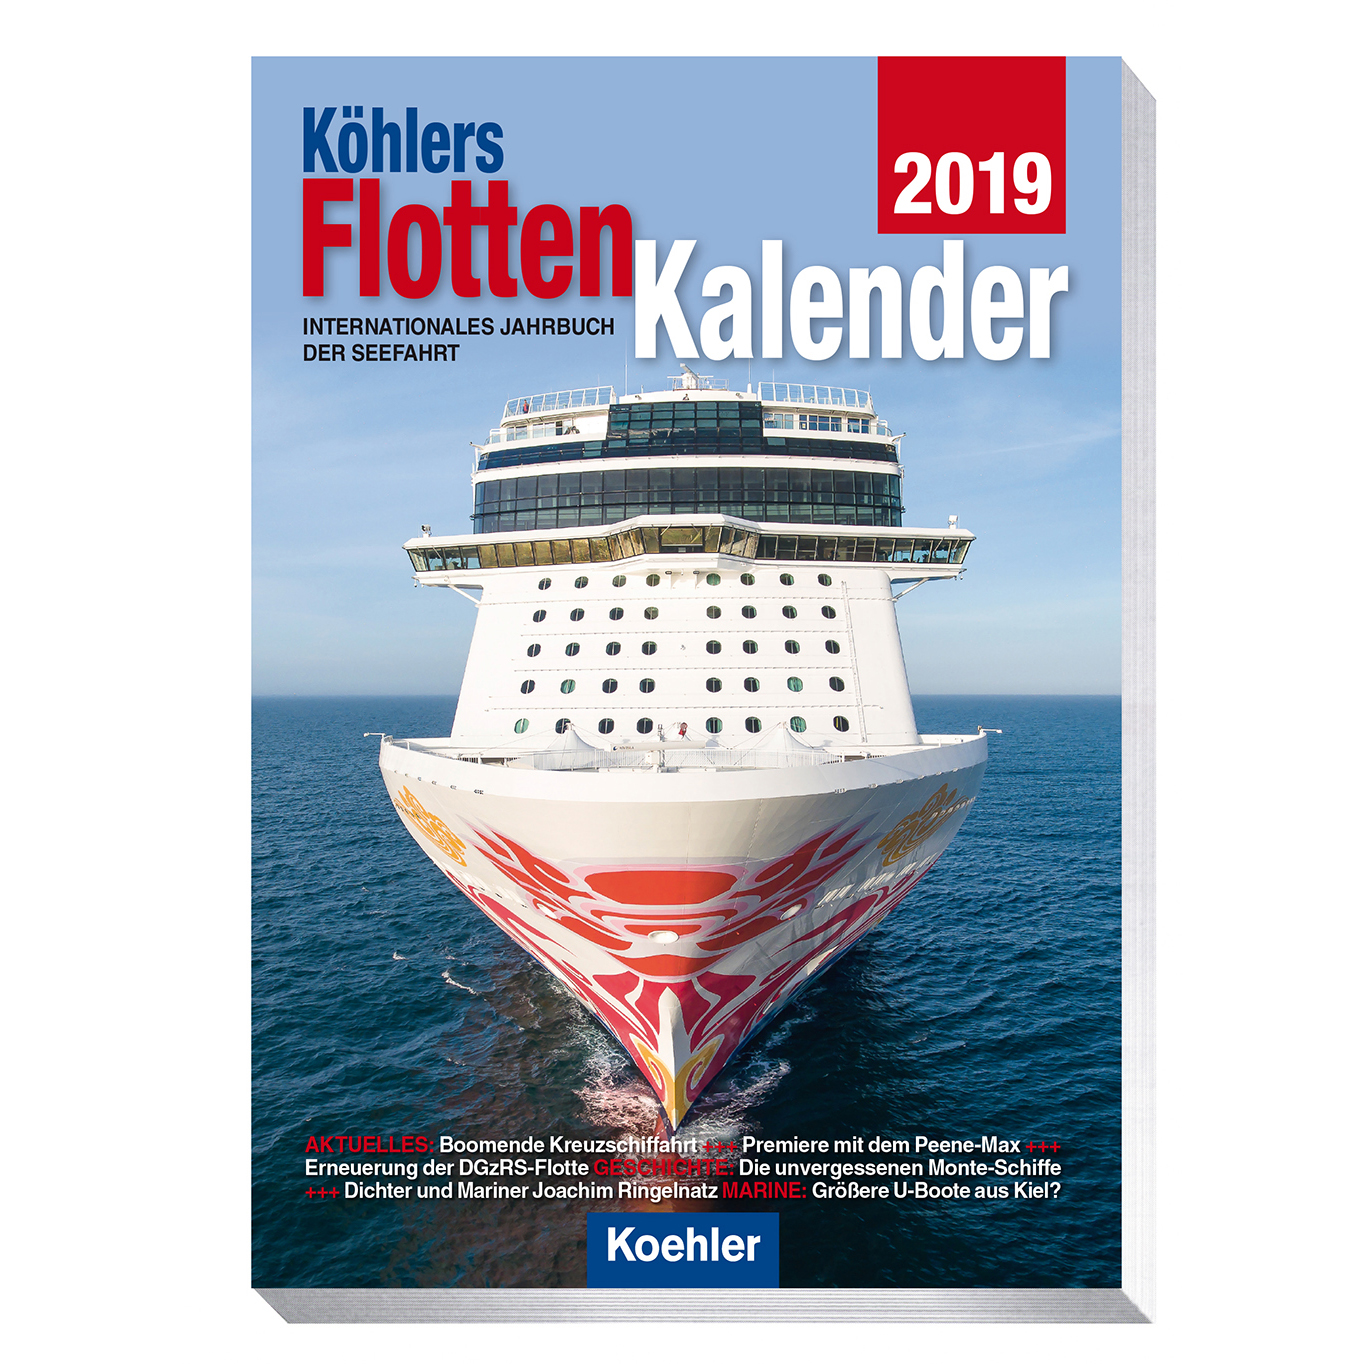 Köhlers FlottenKalender 2019 Internationales Jahrbuch der Seefahrt PDF
Epub-Ebook